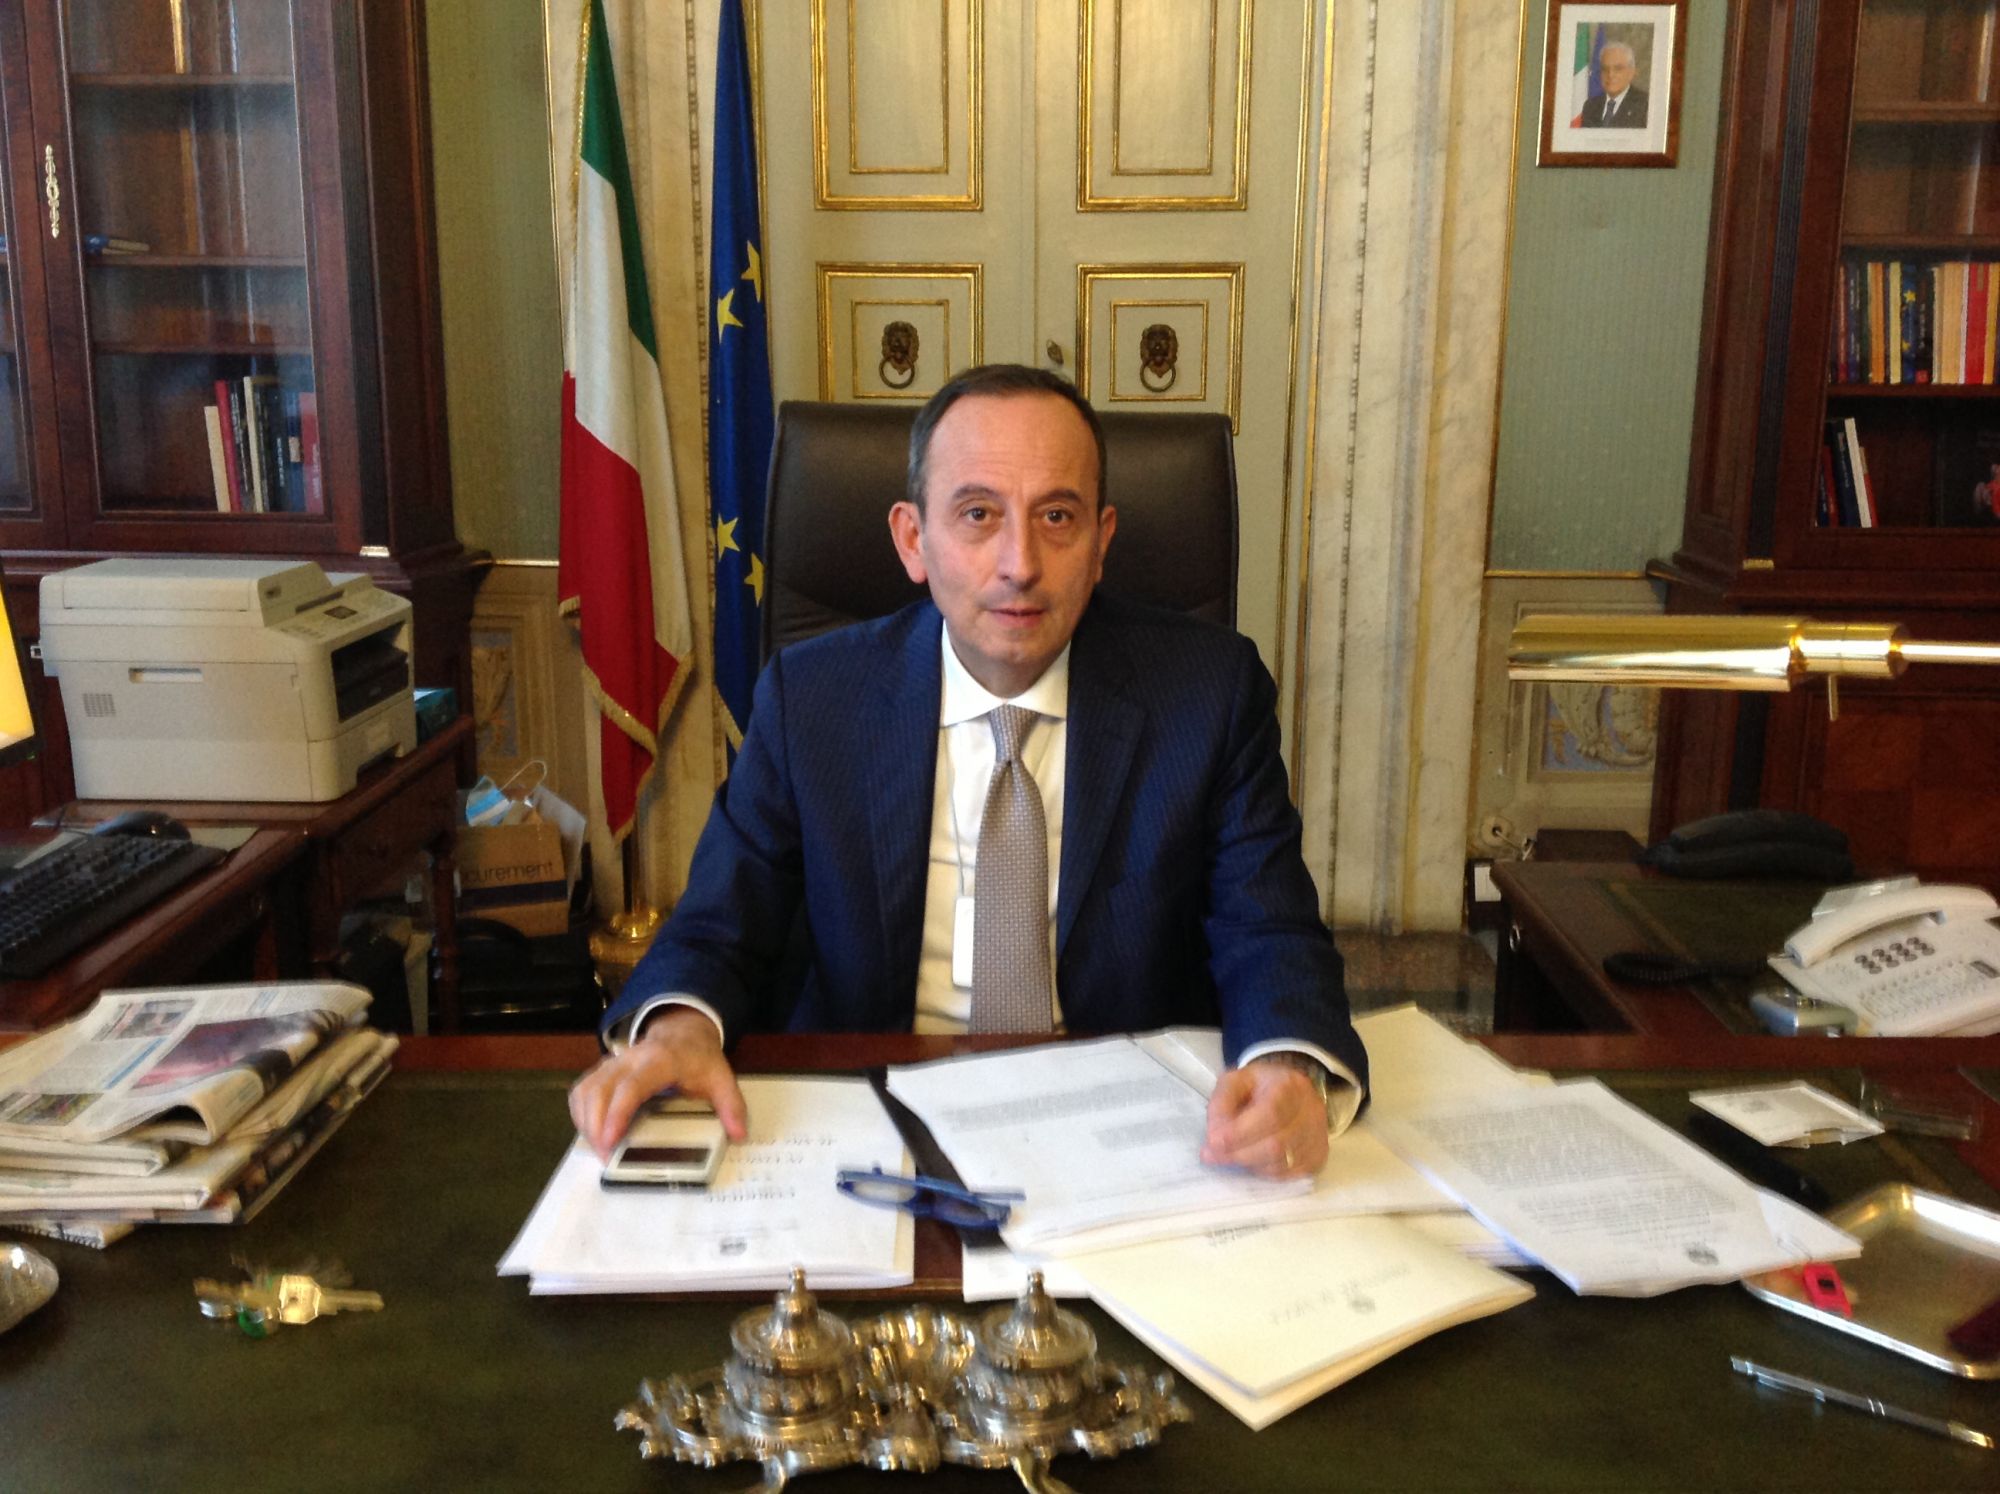 Francesco Esposito è il nuovo Prefetto di Lucca: l’insediamento oggi